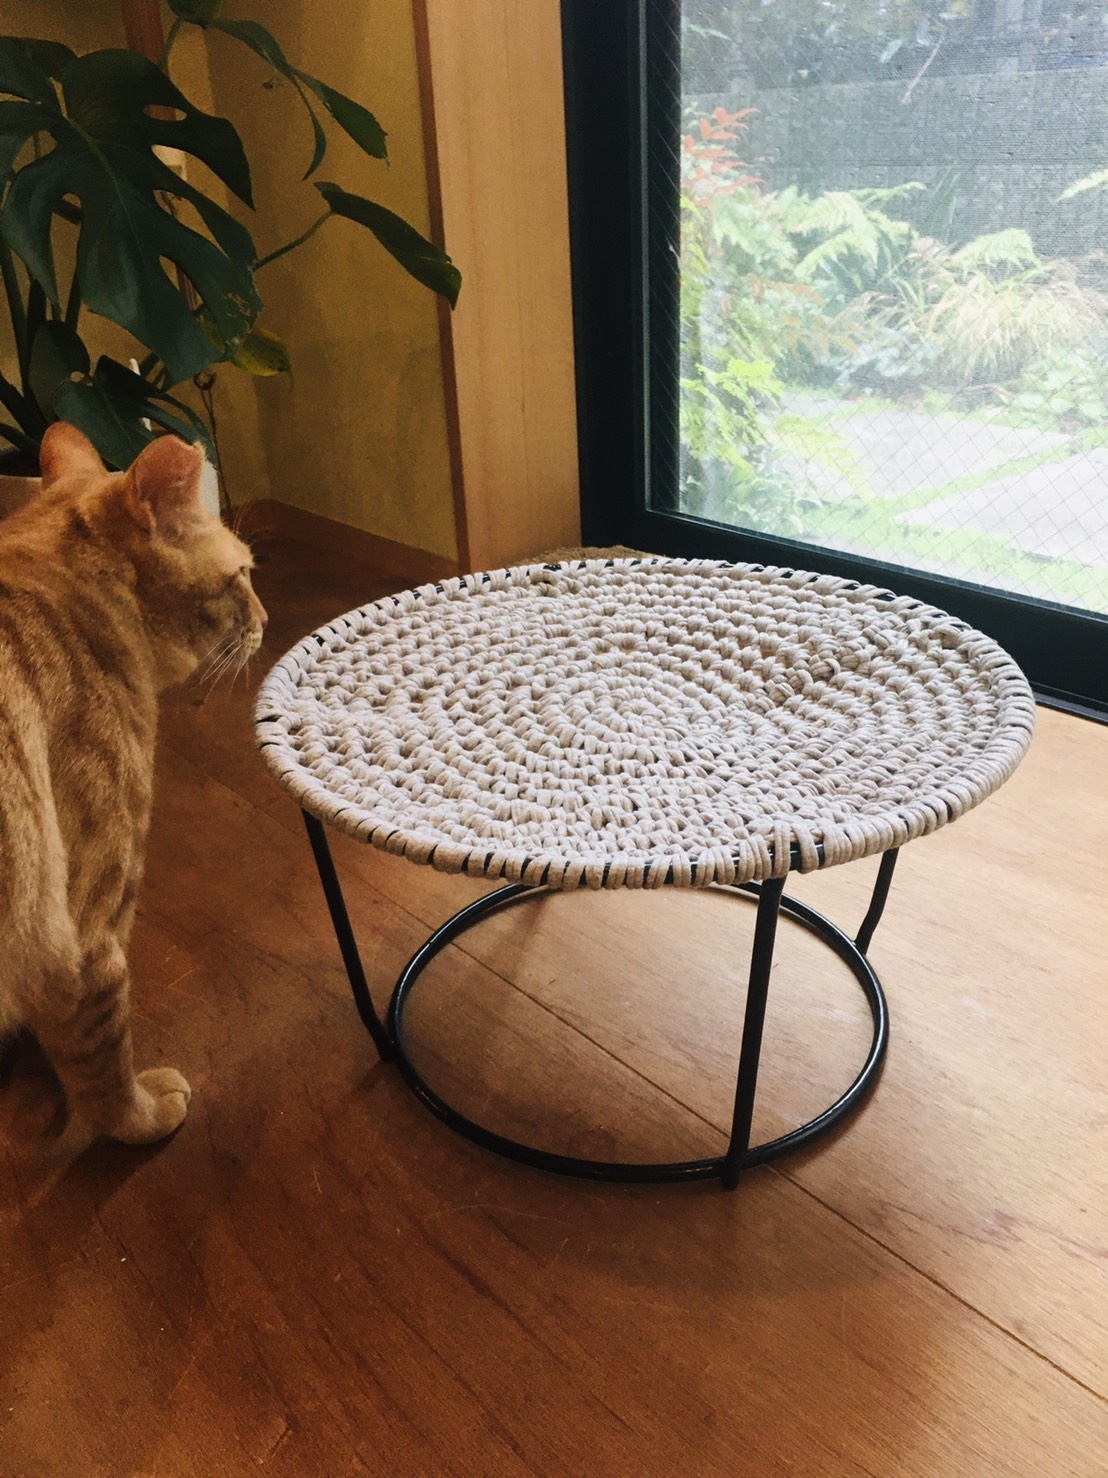 猫のための編み物教室『猫草』の写真3枚目